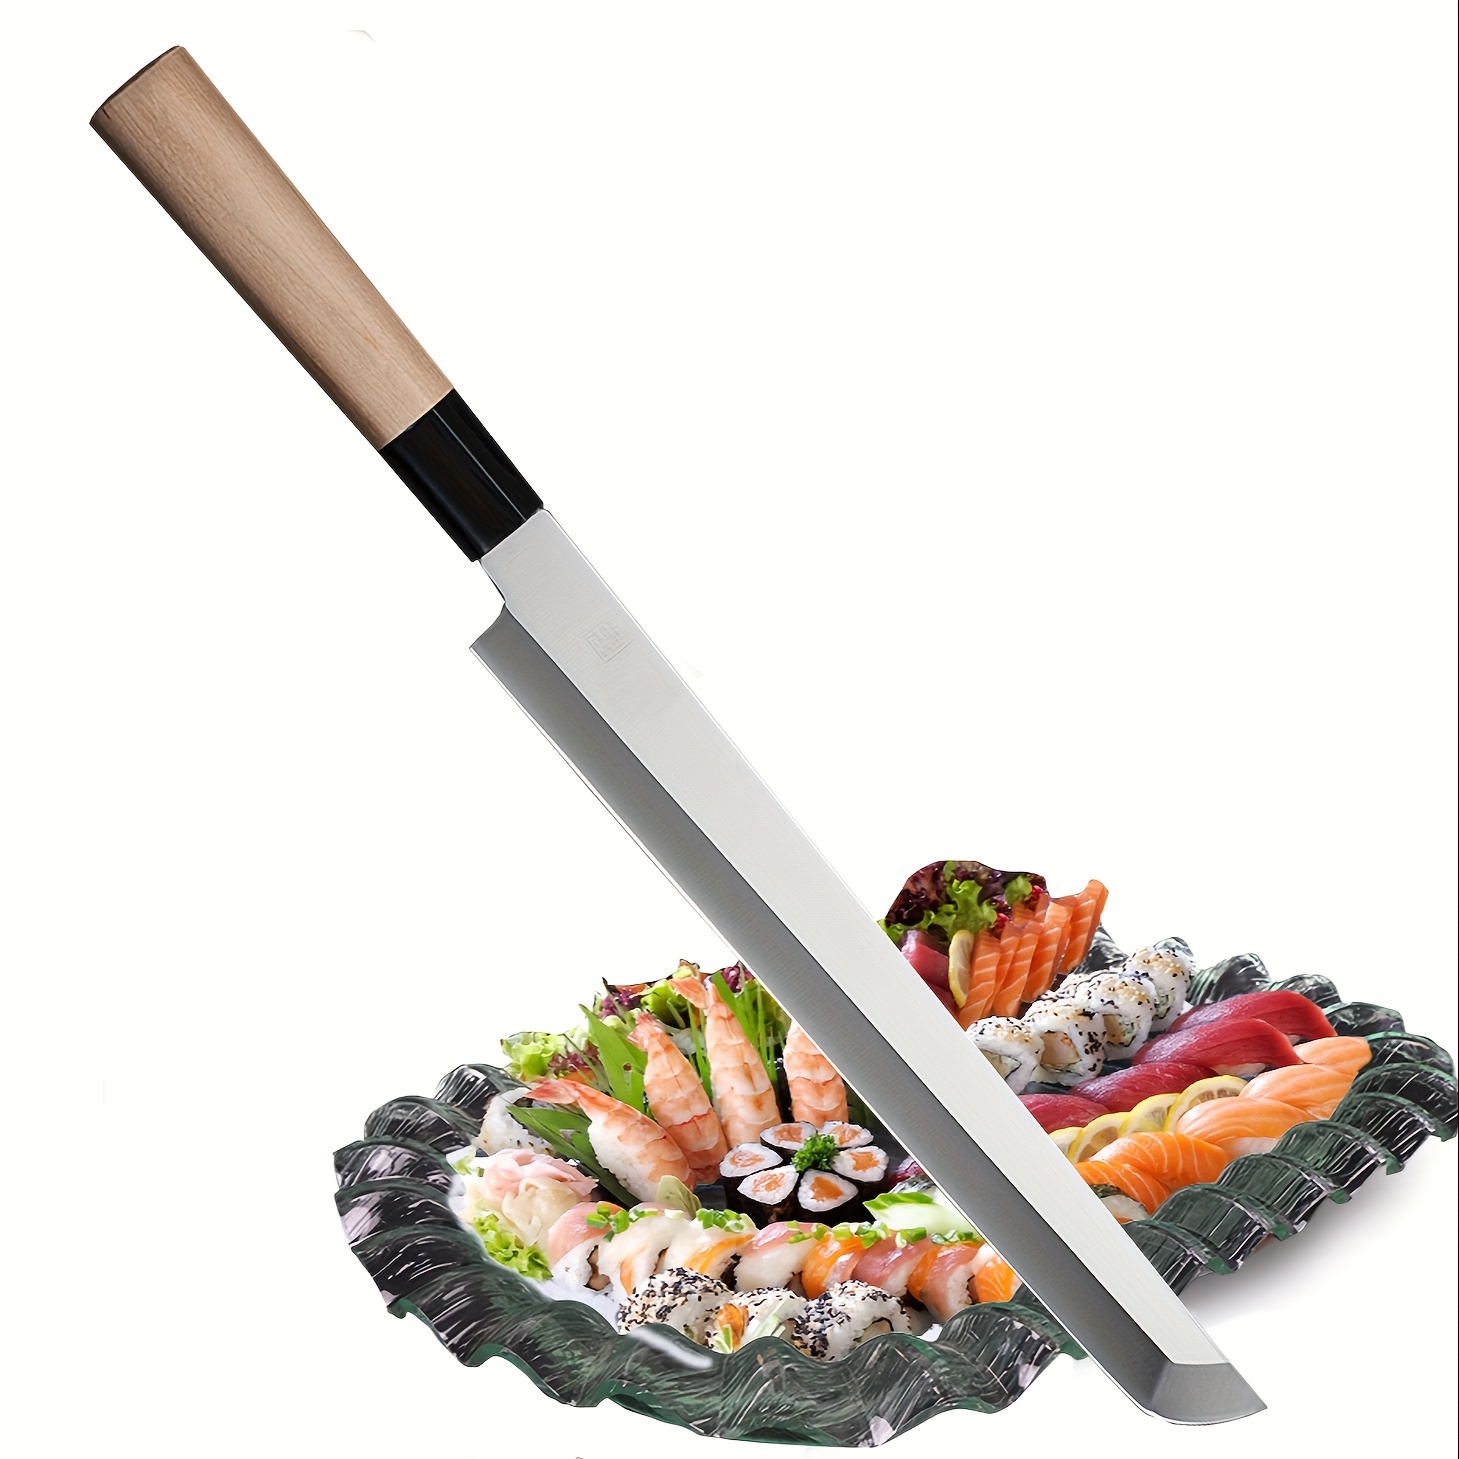 Japanese Fish Knife - Temu